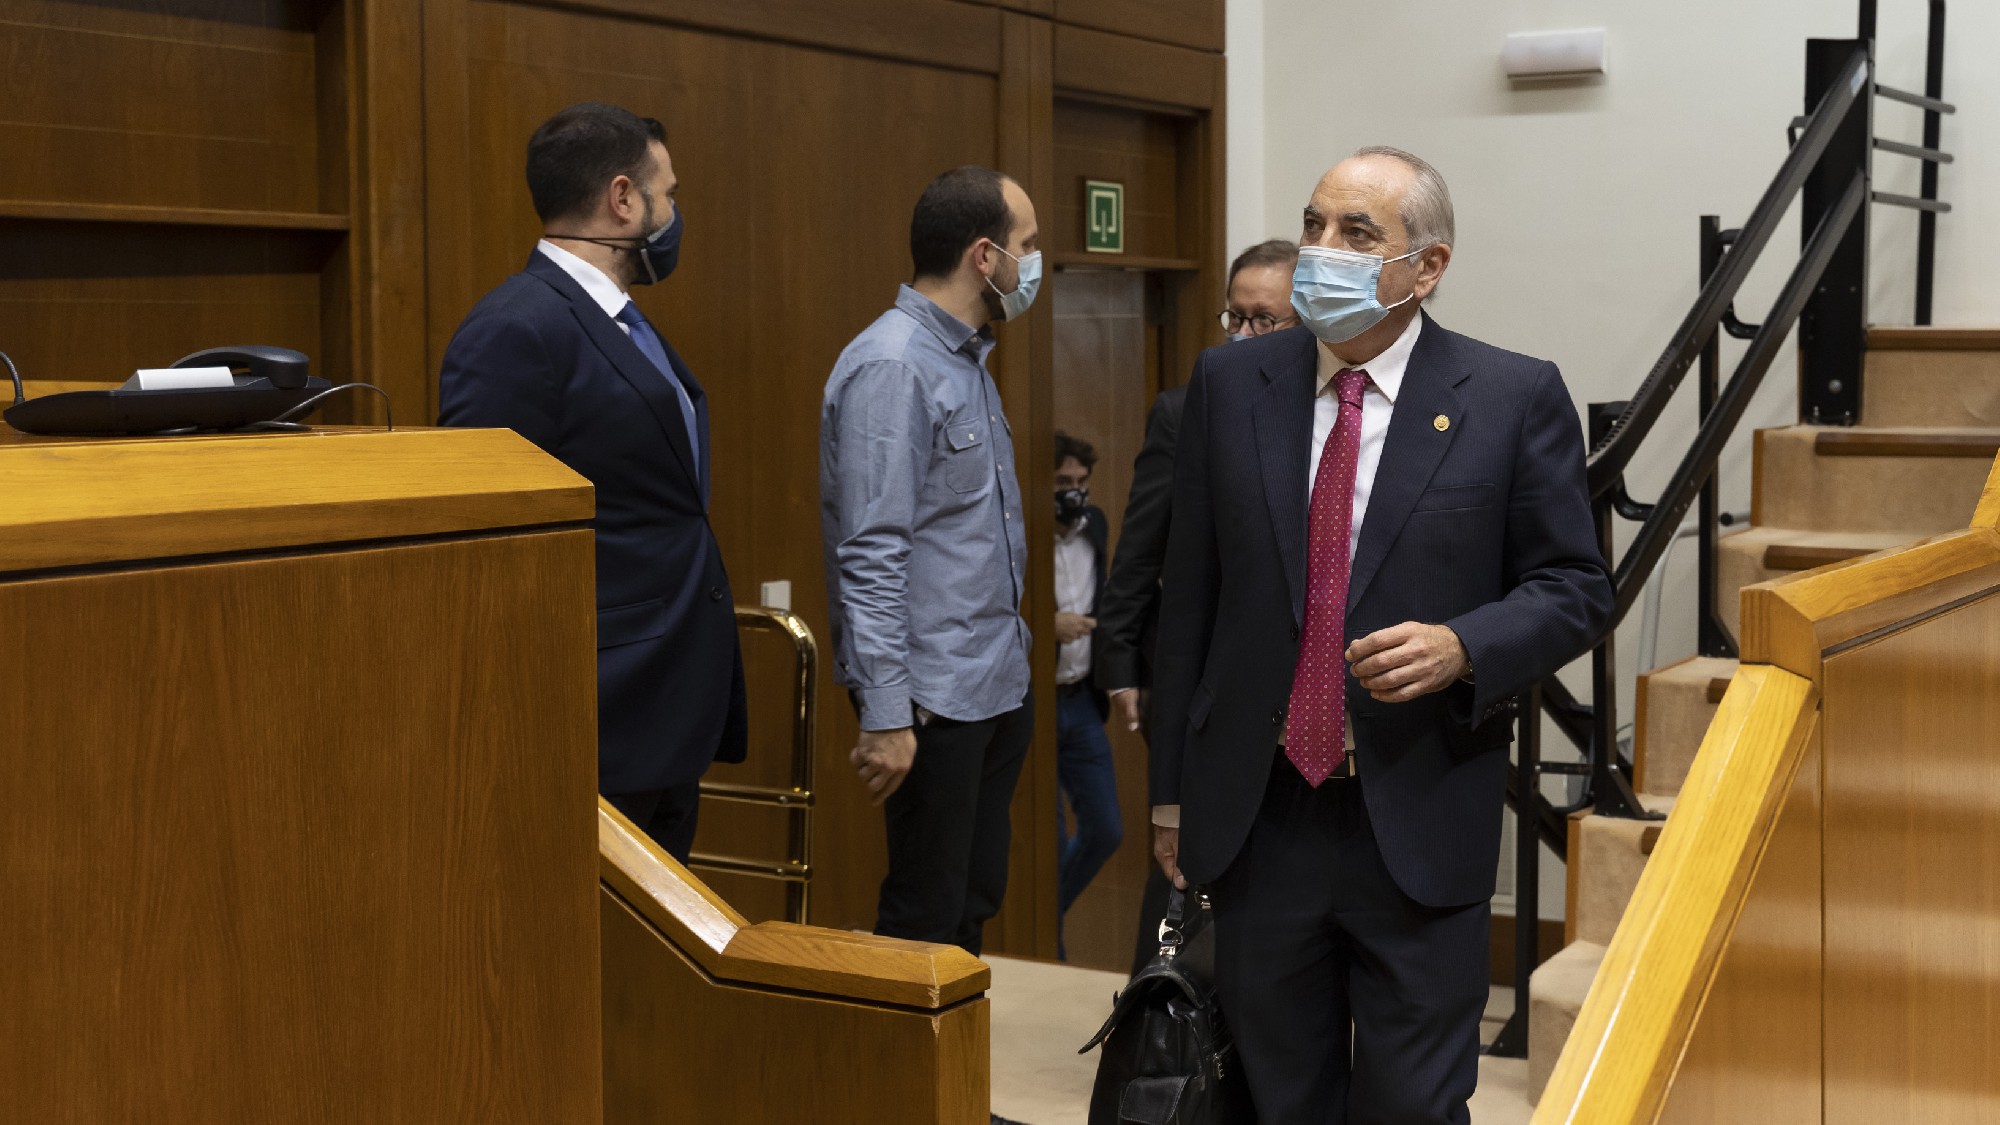 El Consejero Iñaki Arriola interviene en el Parlamento Vasco | Foto de archivo: Socialistas Vascos